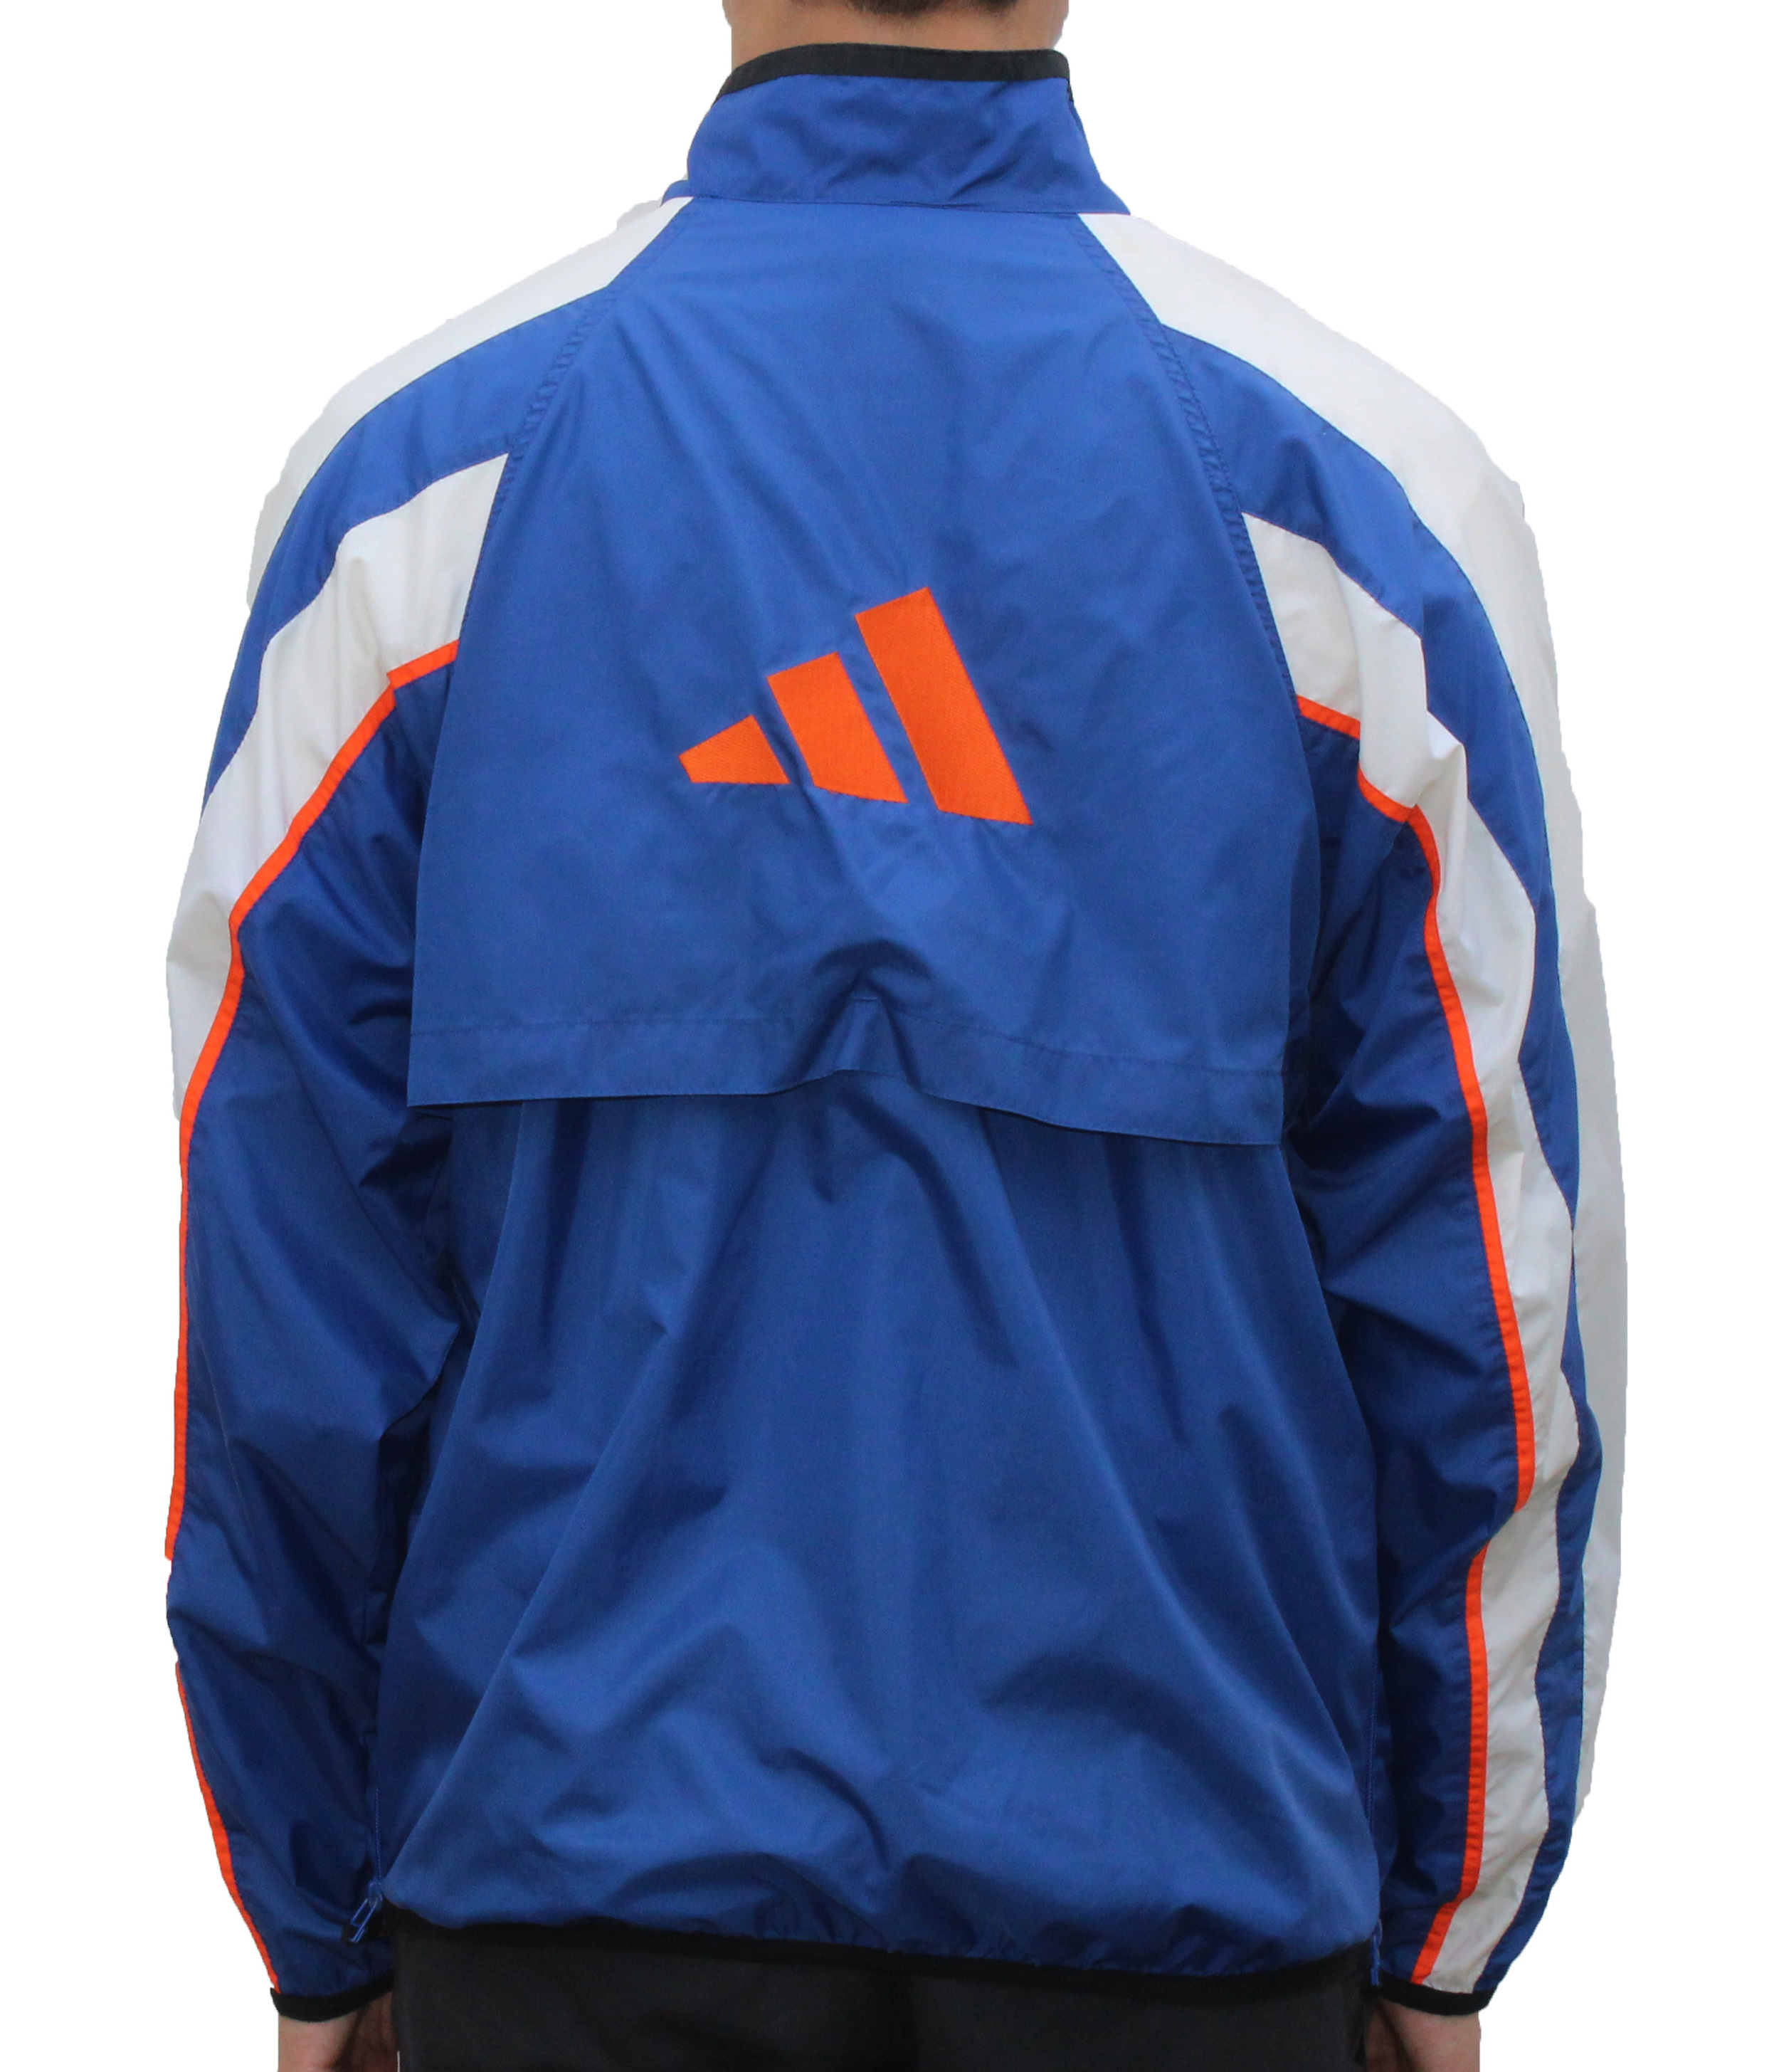 blue and orange adidas jacket